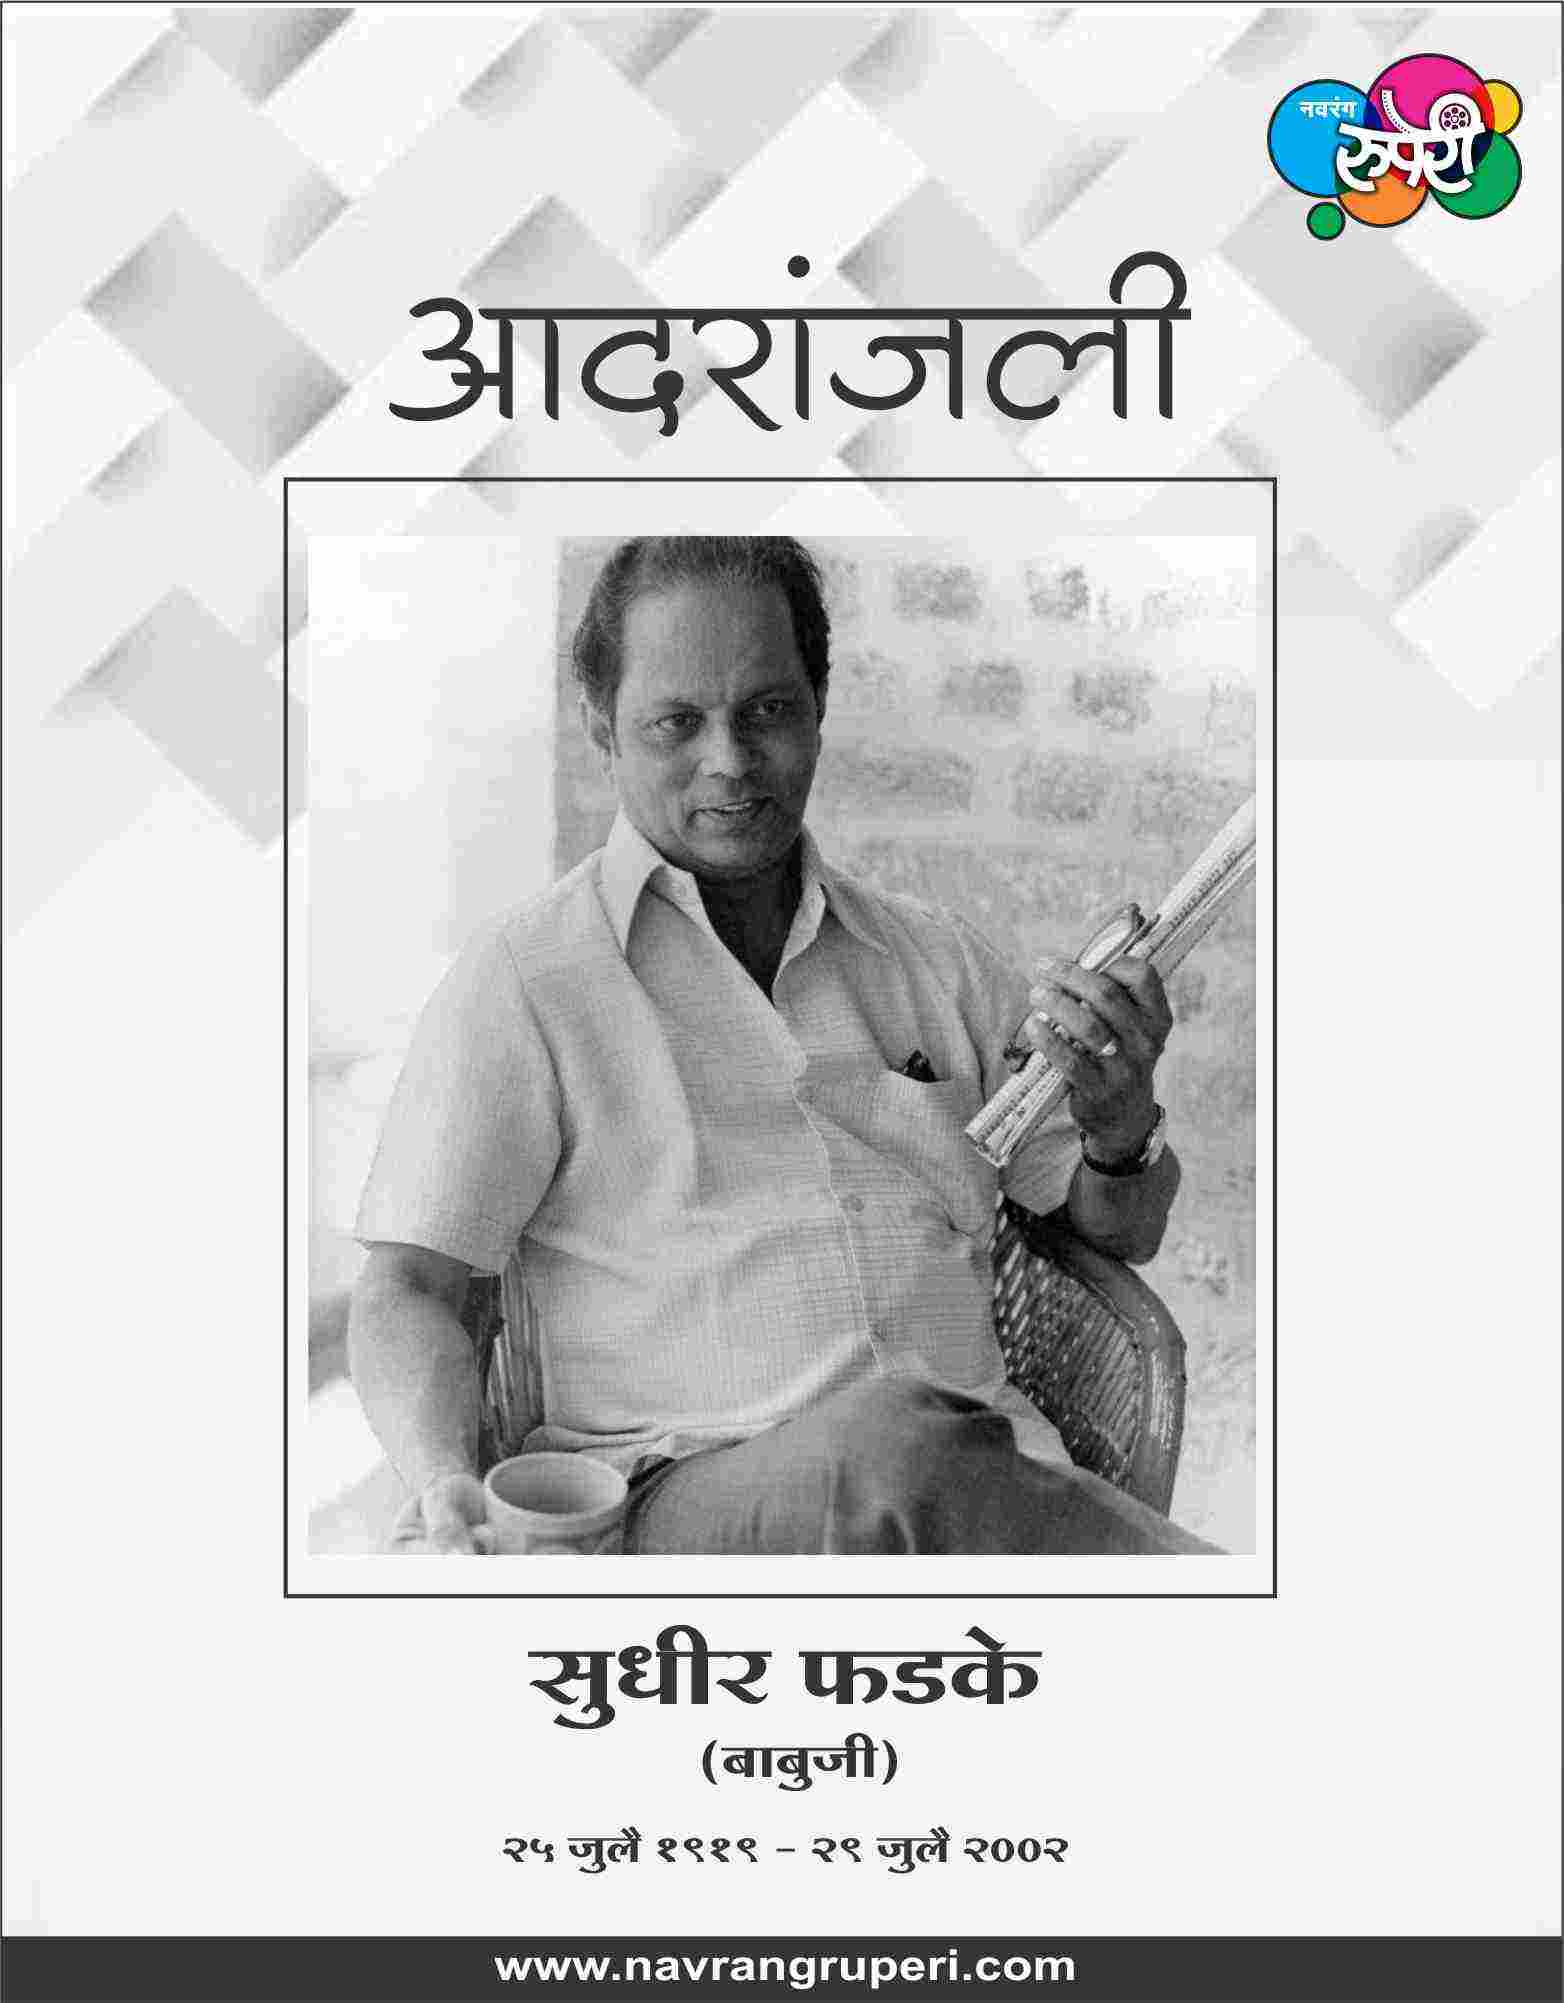 Remembering The Legendary Music Director and Singer of Marathi Film Music Sudhir Phadke